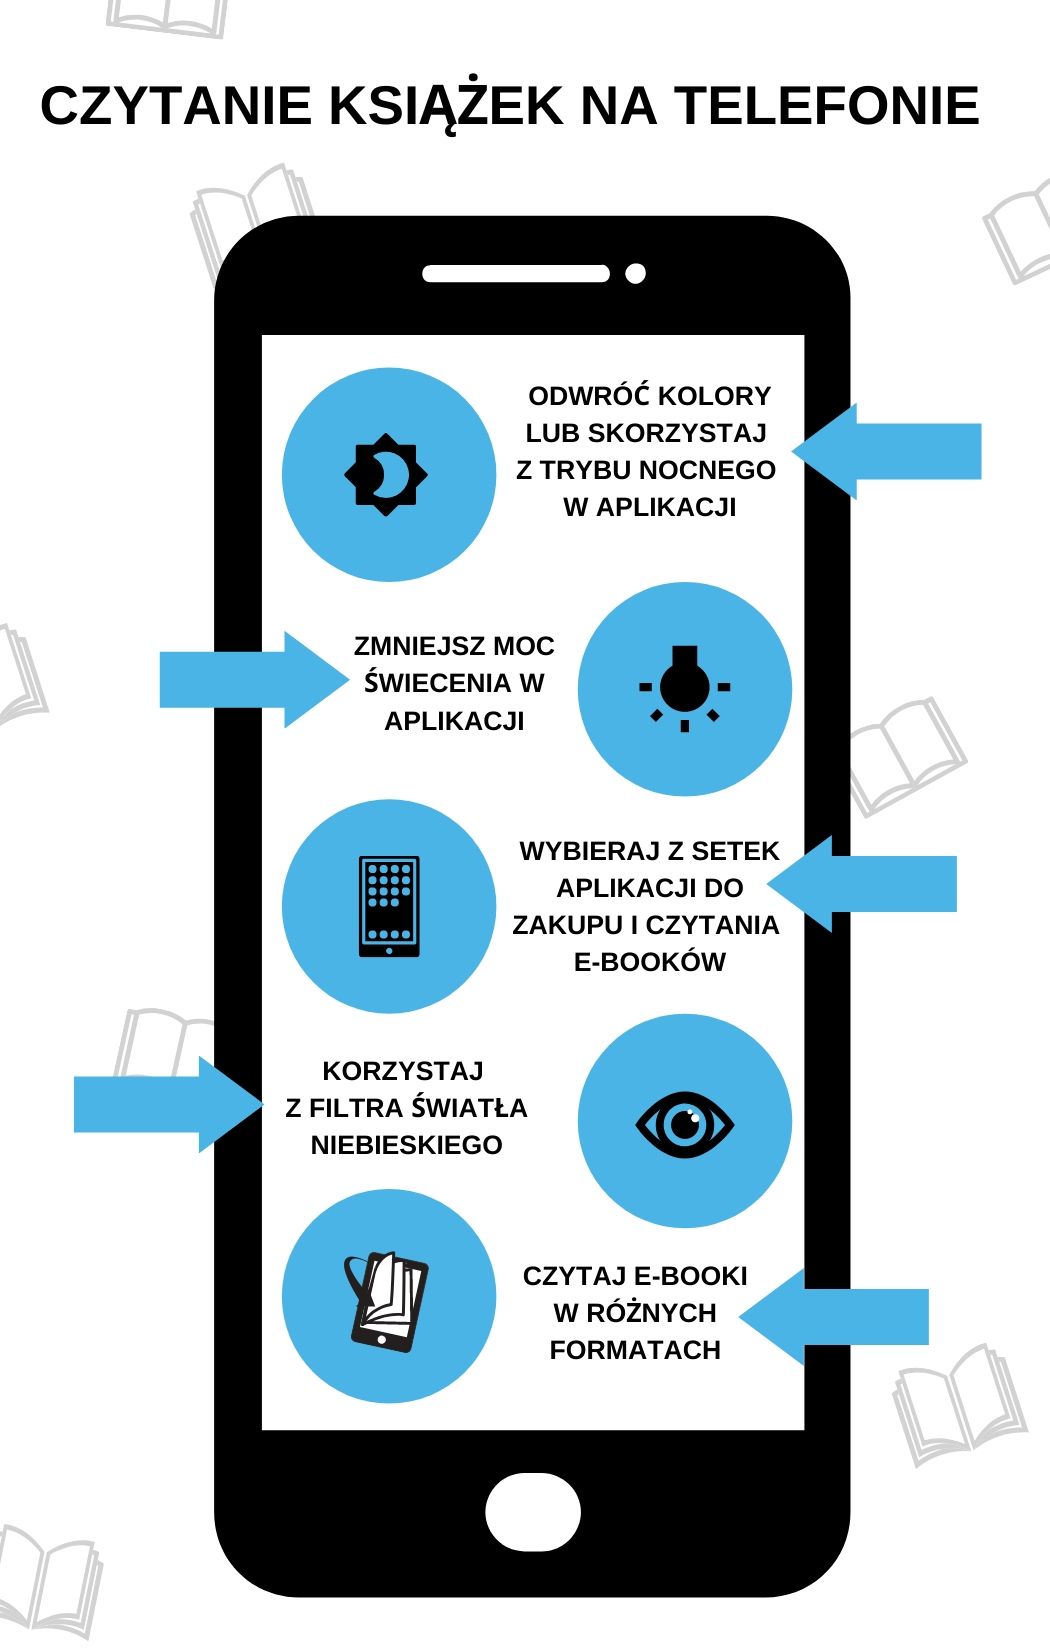 Czytanie książek na telefonie infografika